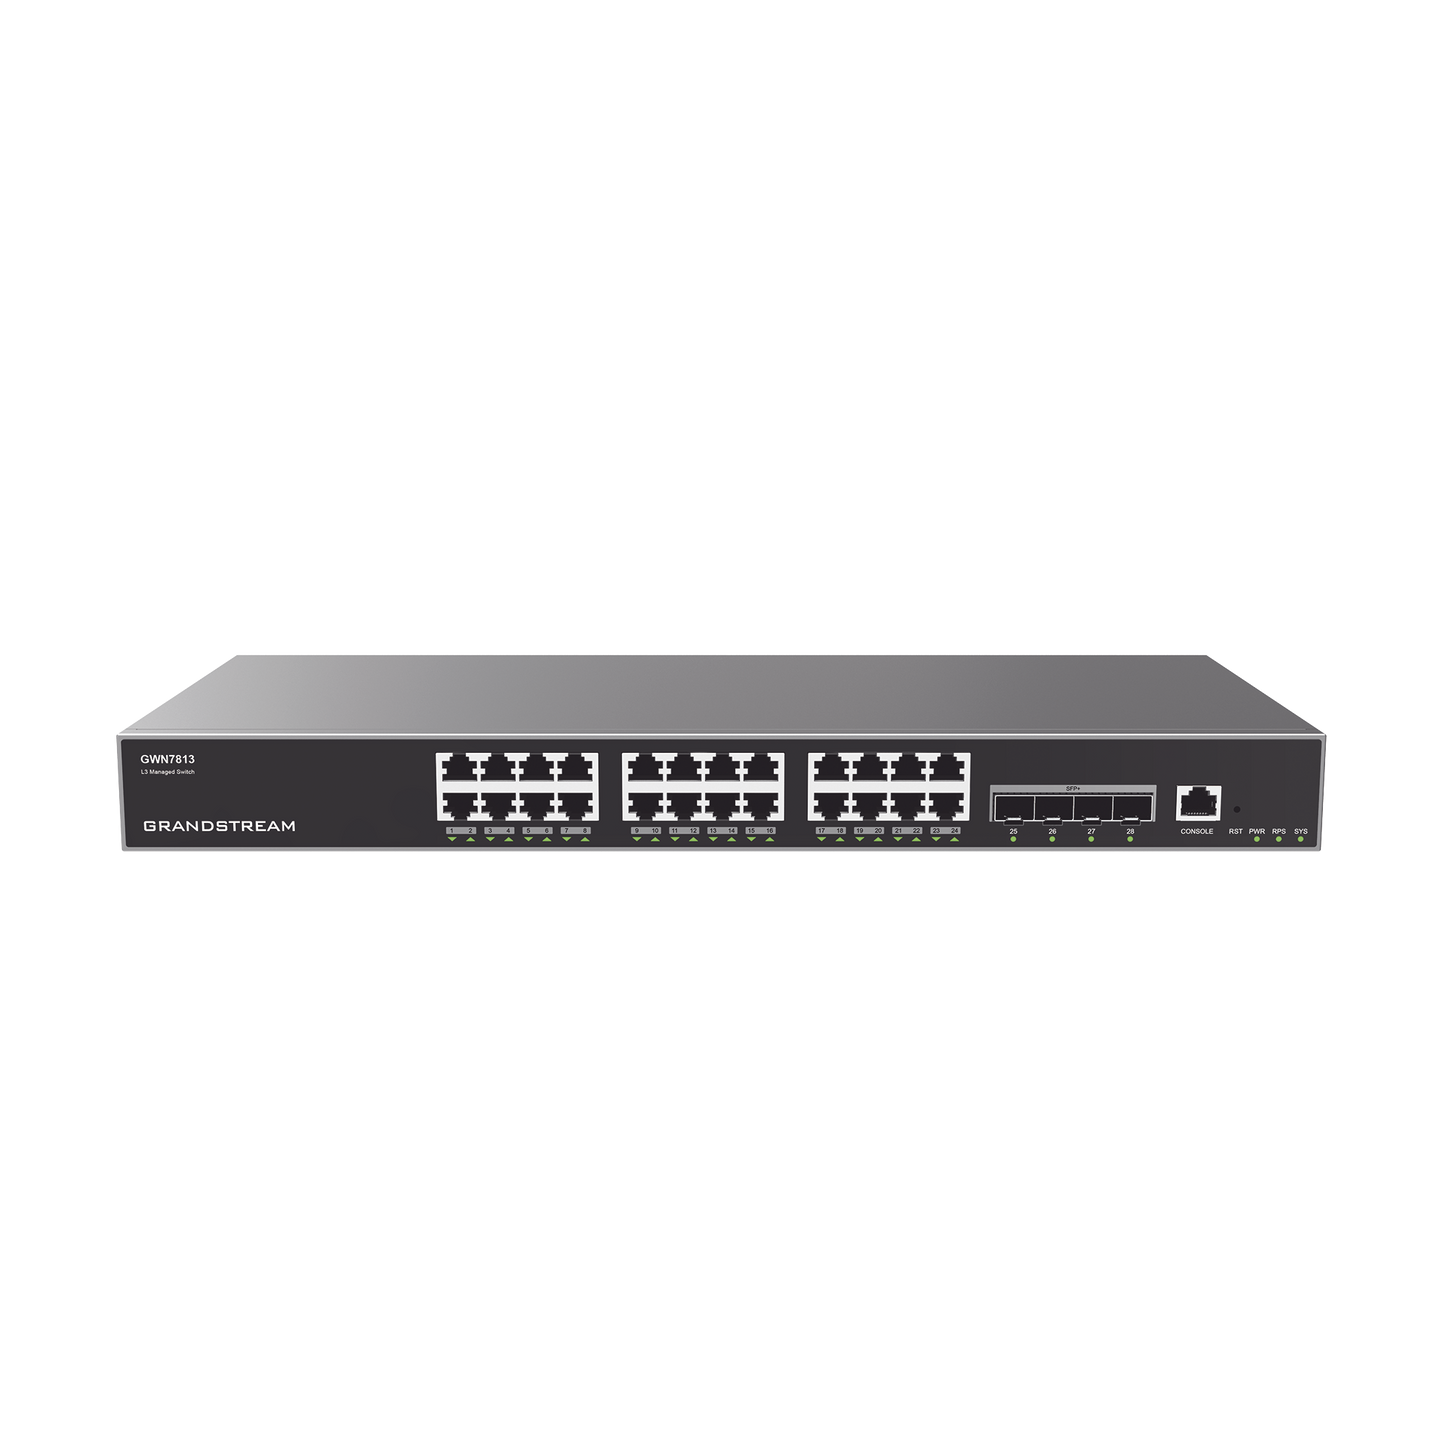 Switch Capa 3 Administrable / 24 puertos 10/100/1000 Mbps + 4 Puertos SFP+ de 10 Gigabits / Compatible con GWN Cloud.